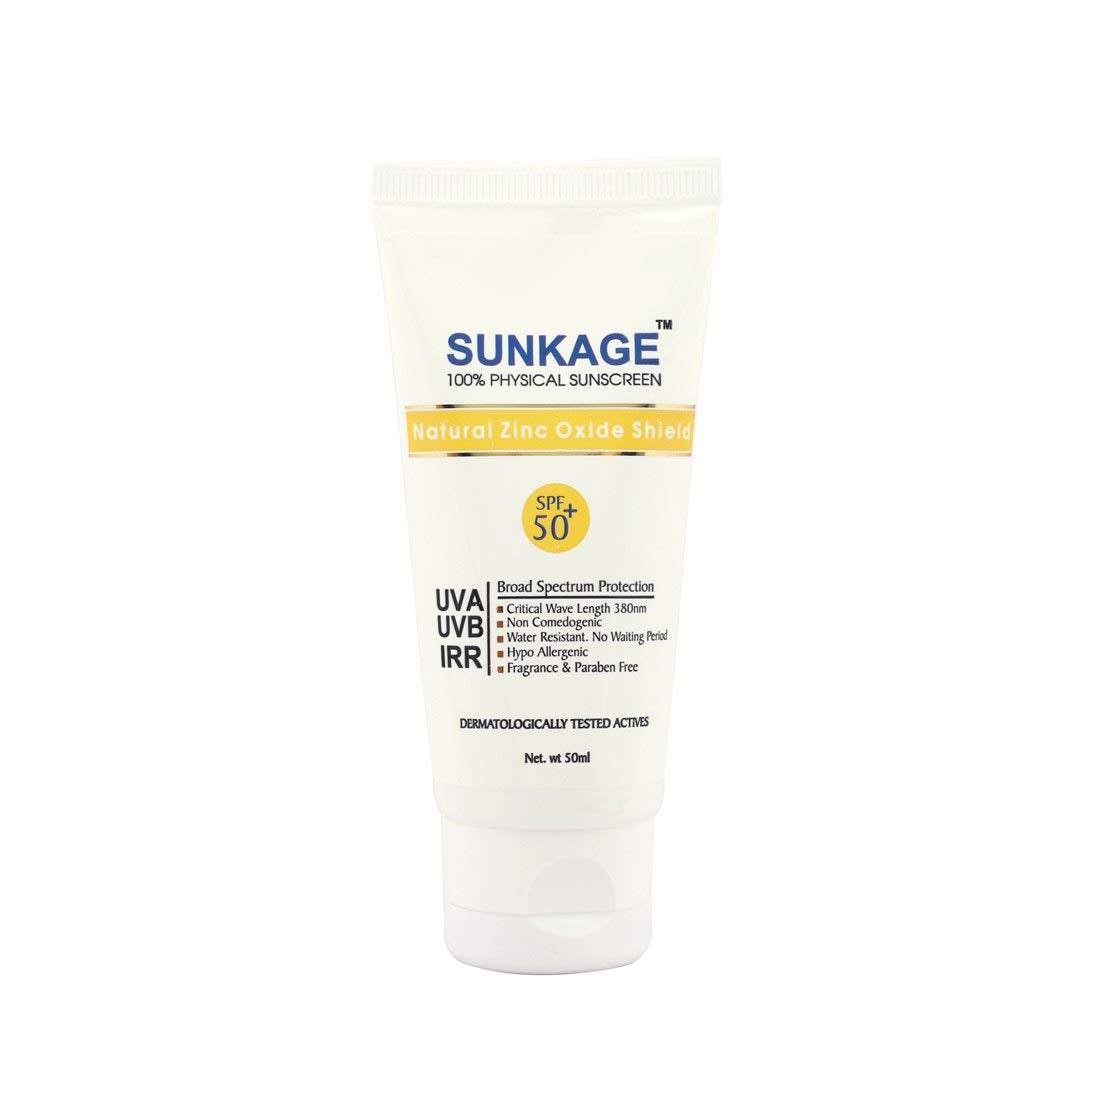 SunKage SPF 50+ Physical Sunscreen, 50ml